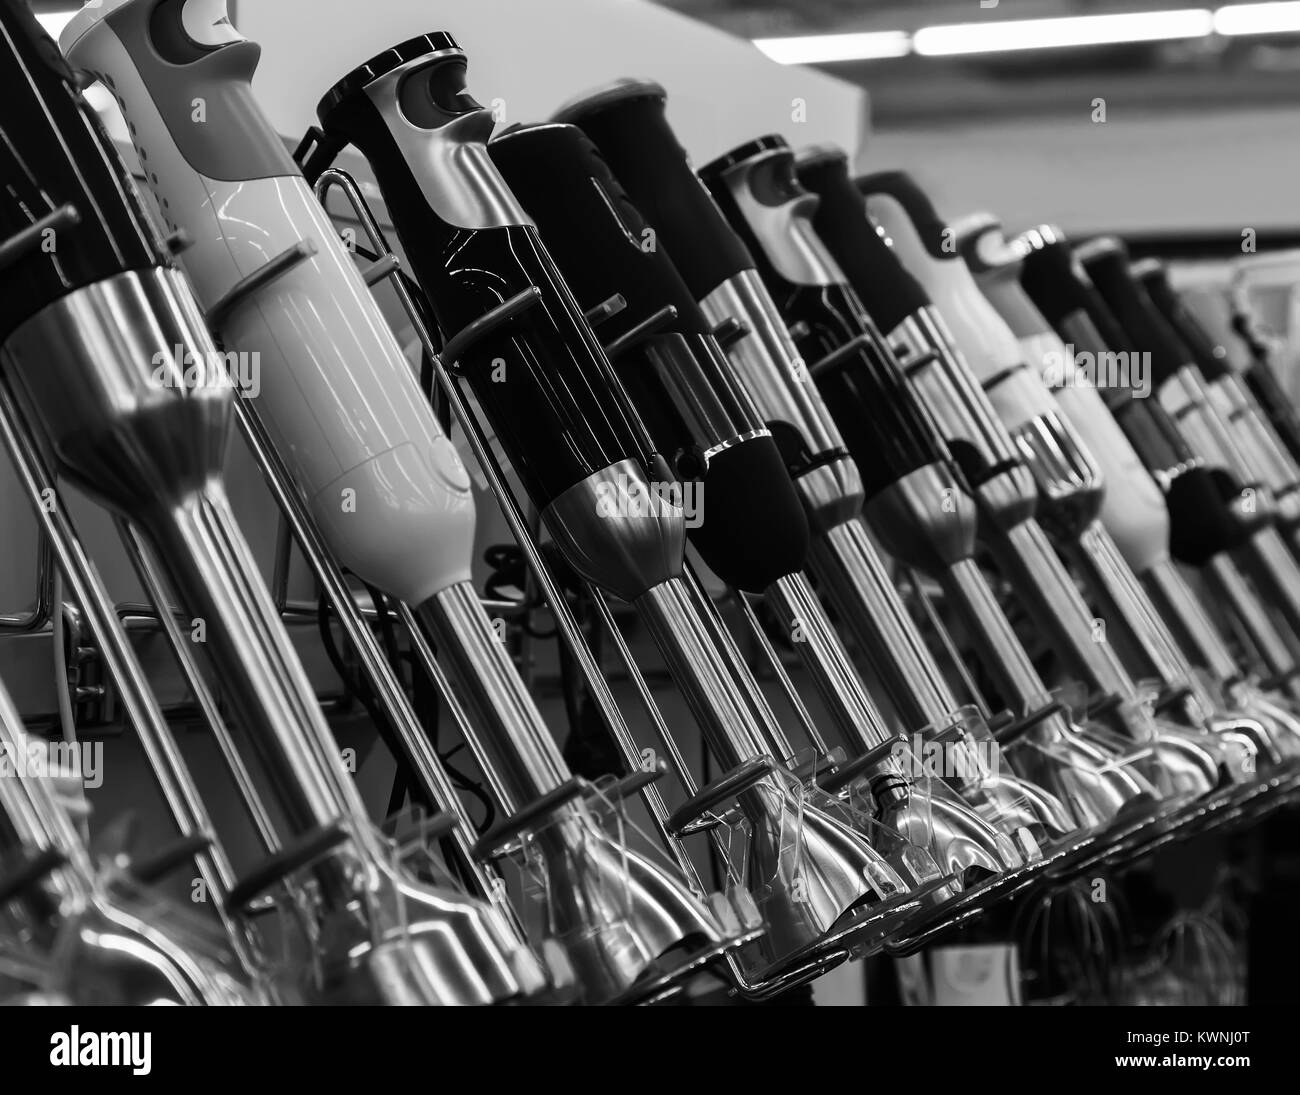 Frullatori nella vetrina del negozio. Immagine in bianco e nero. Foto Stock